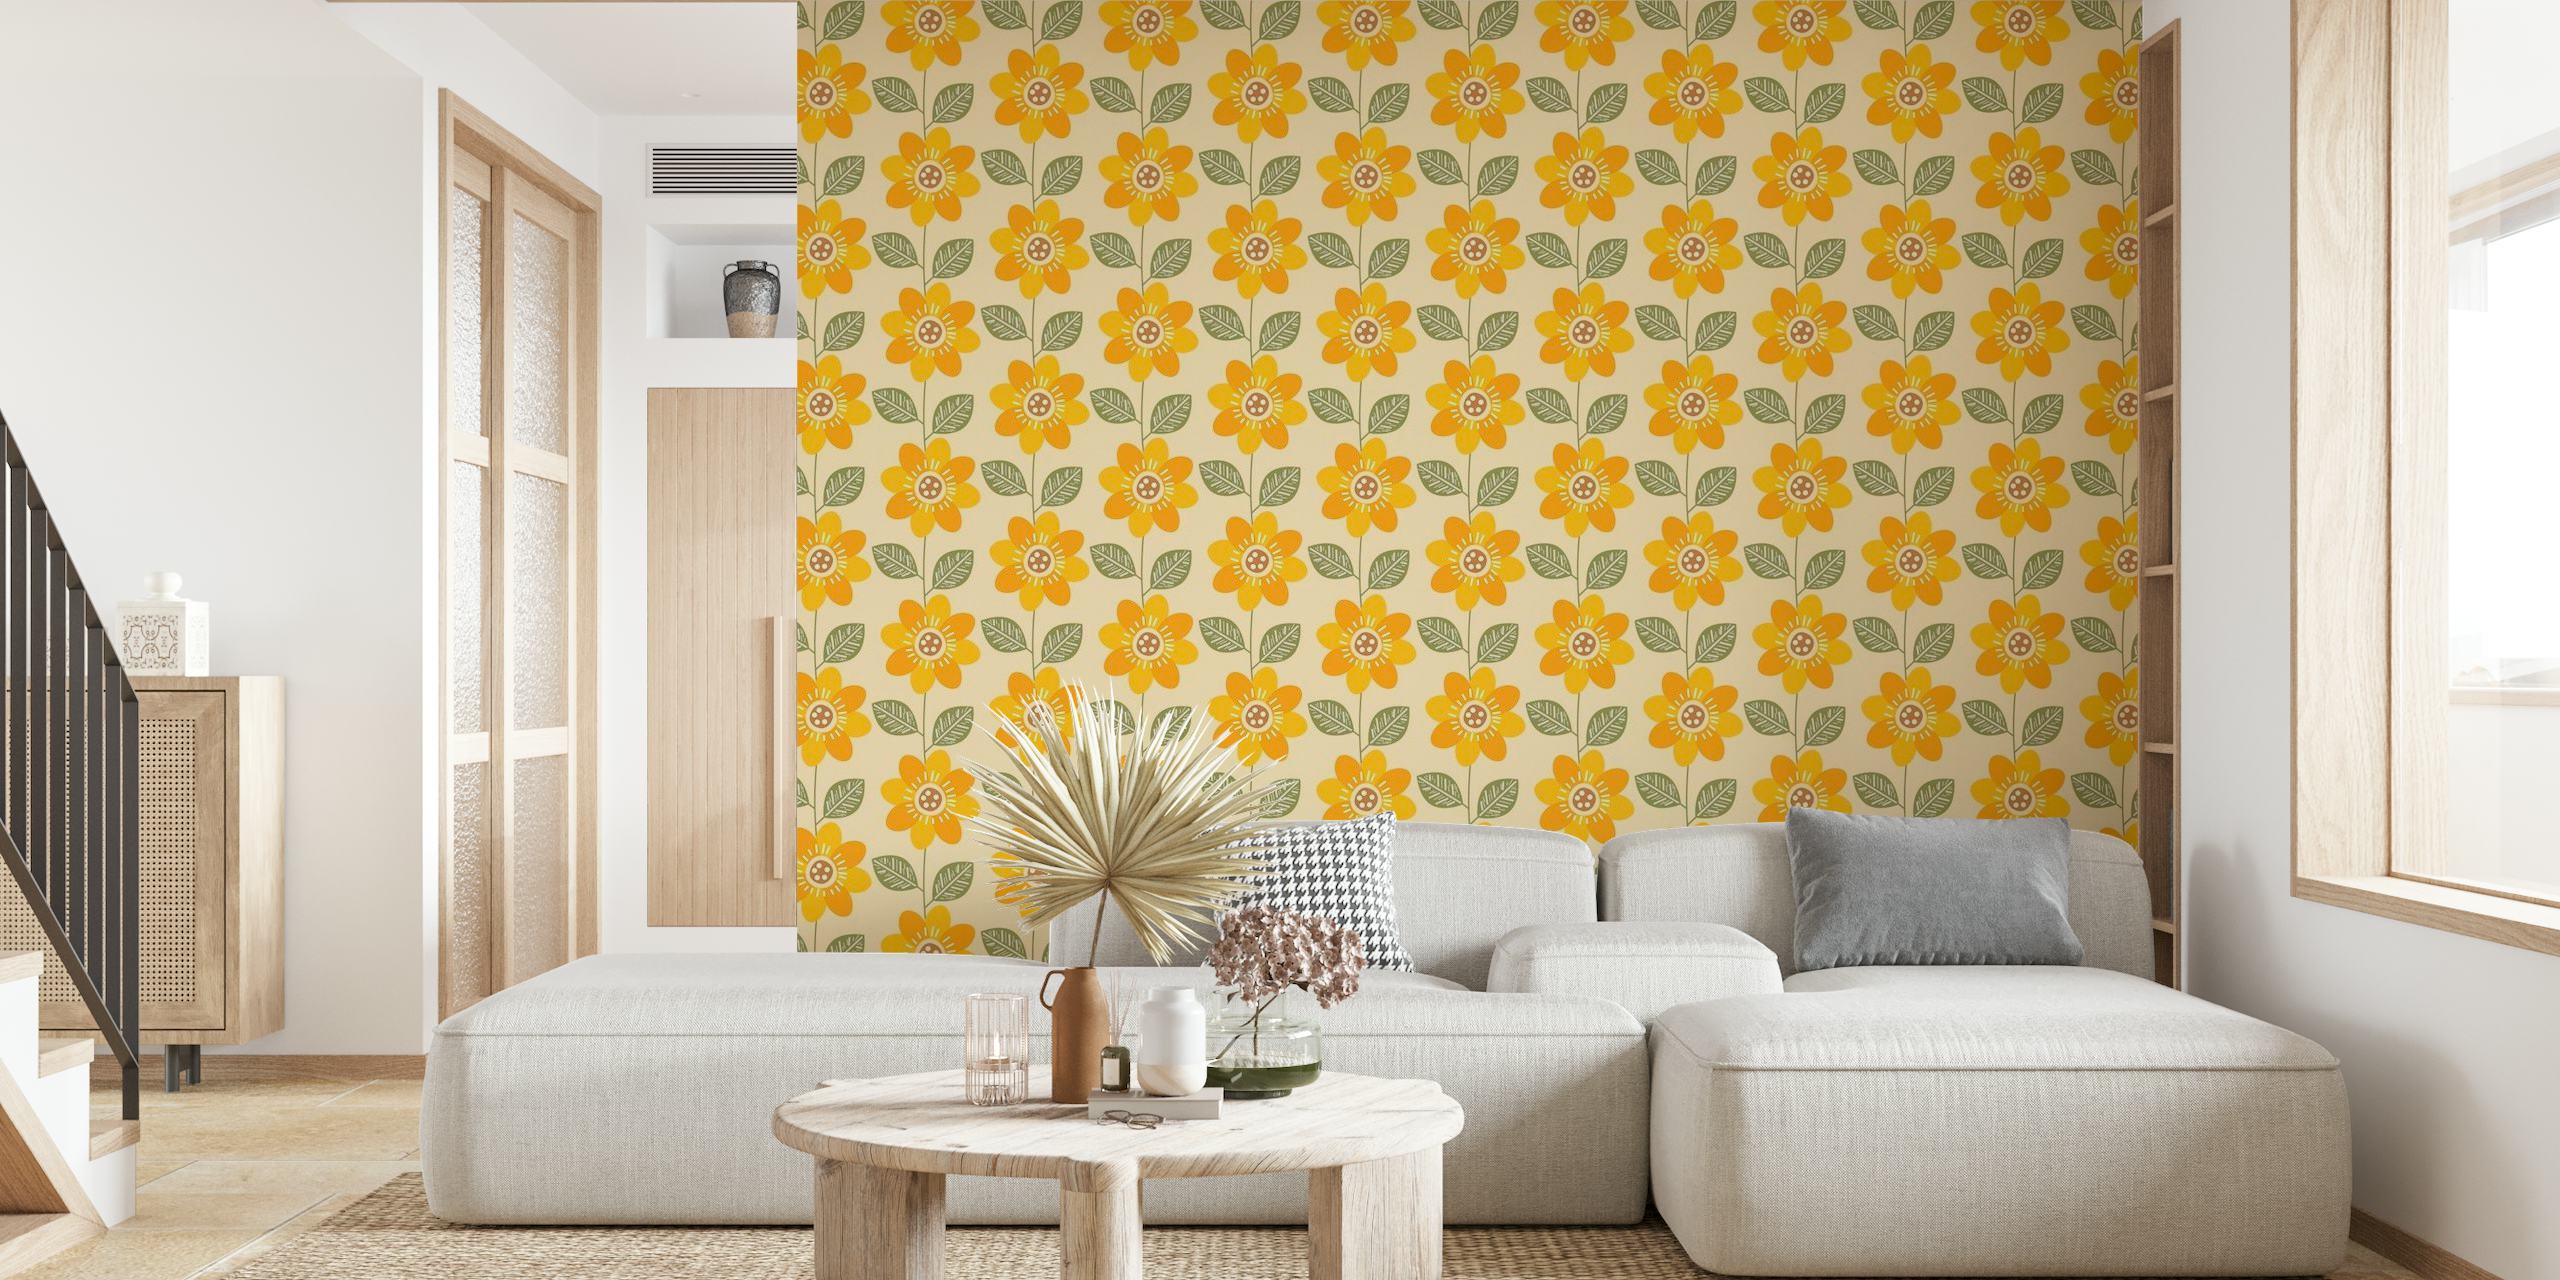 Mural de parede com padrão de girassol com flores amarelas brilhantes e detalhes verdes em um fundo neutro